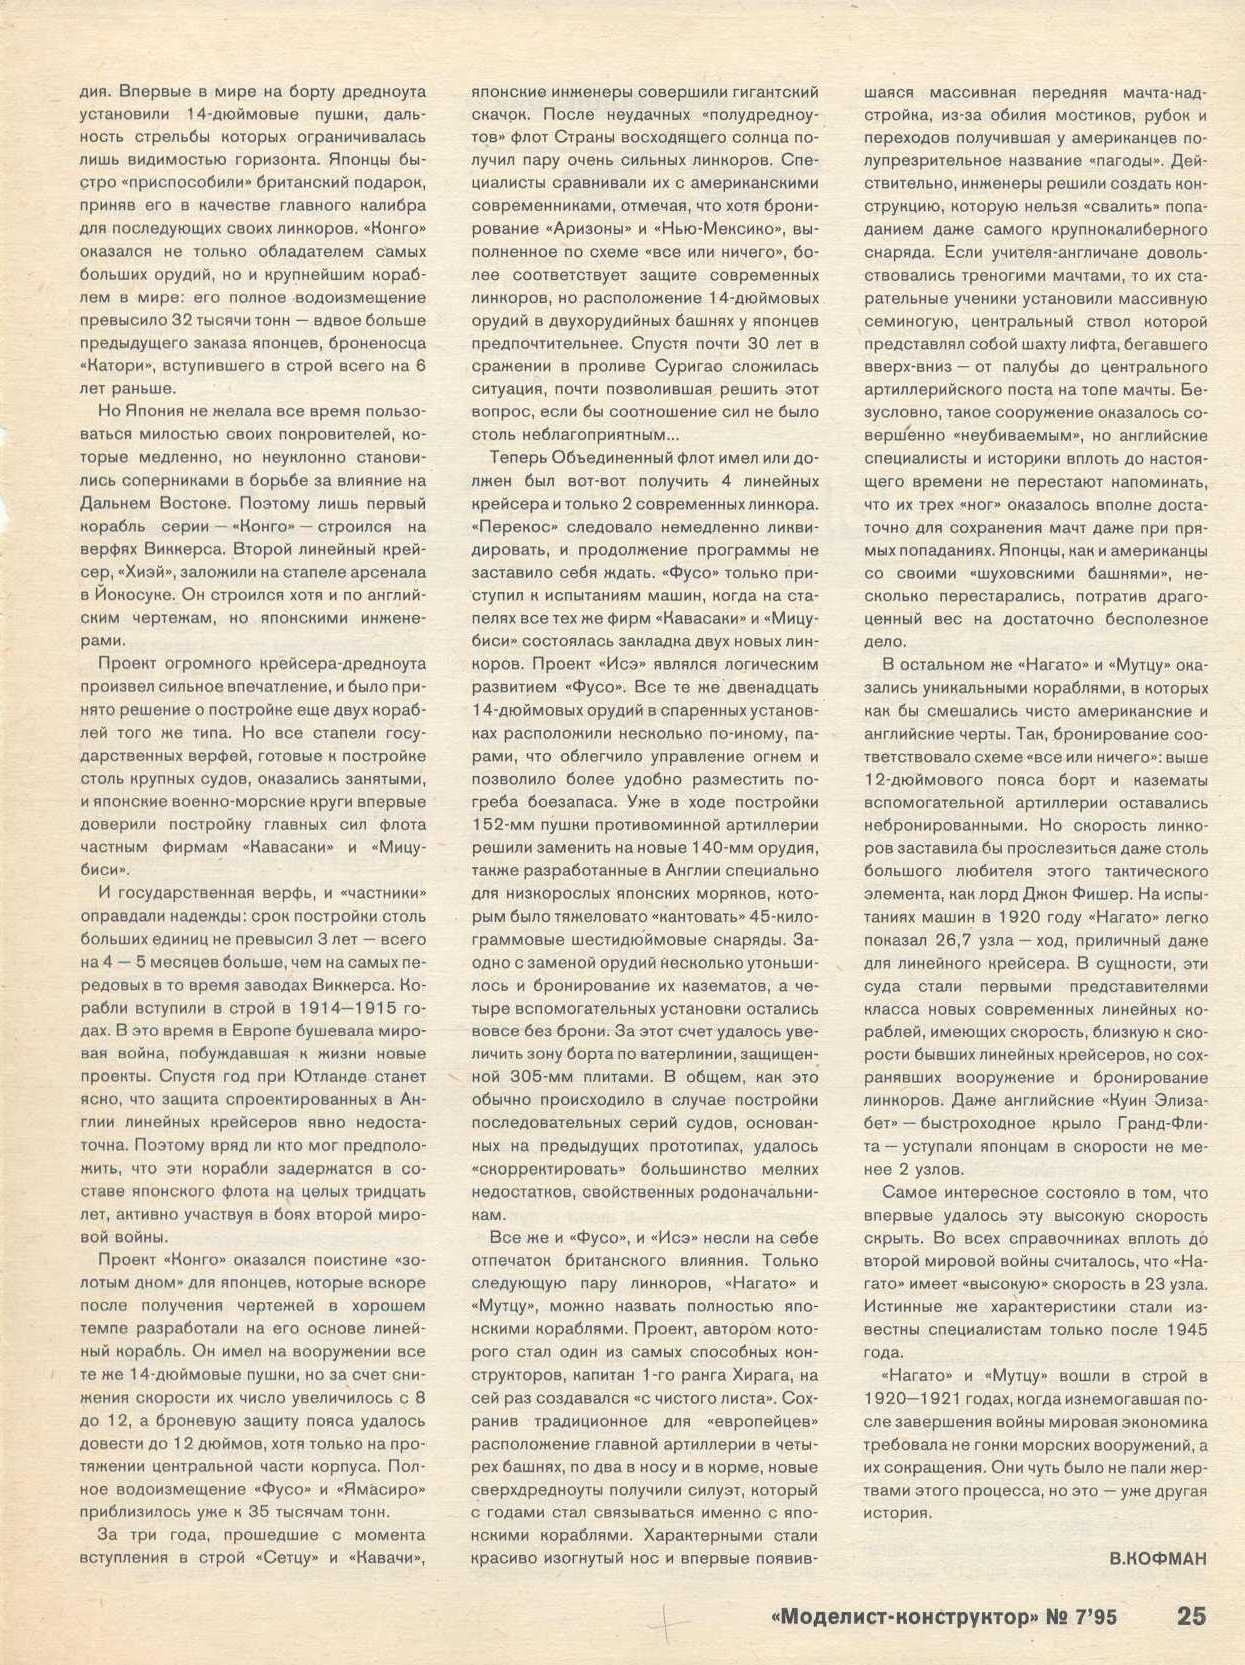 МК 7, 1995, 25 c.